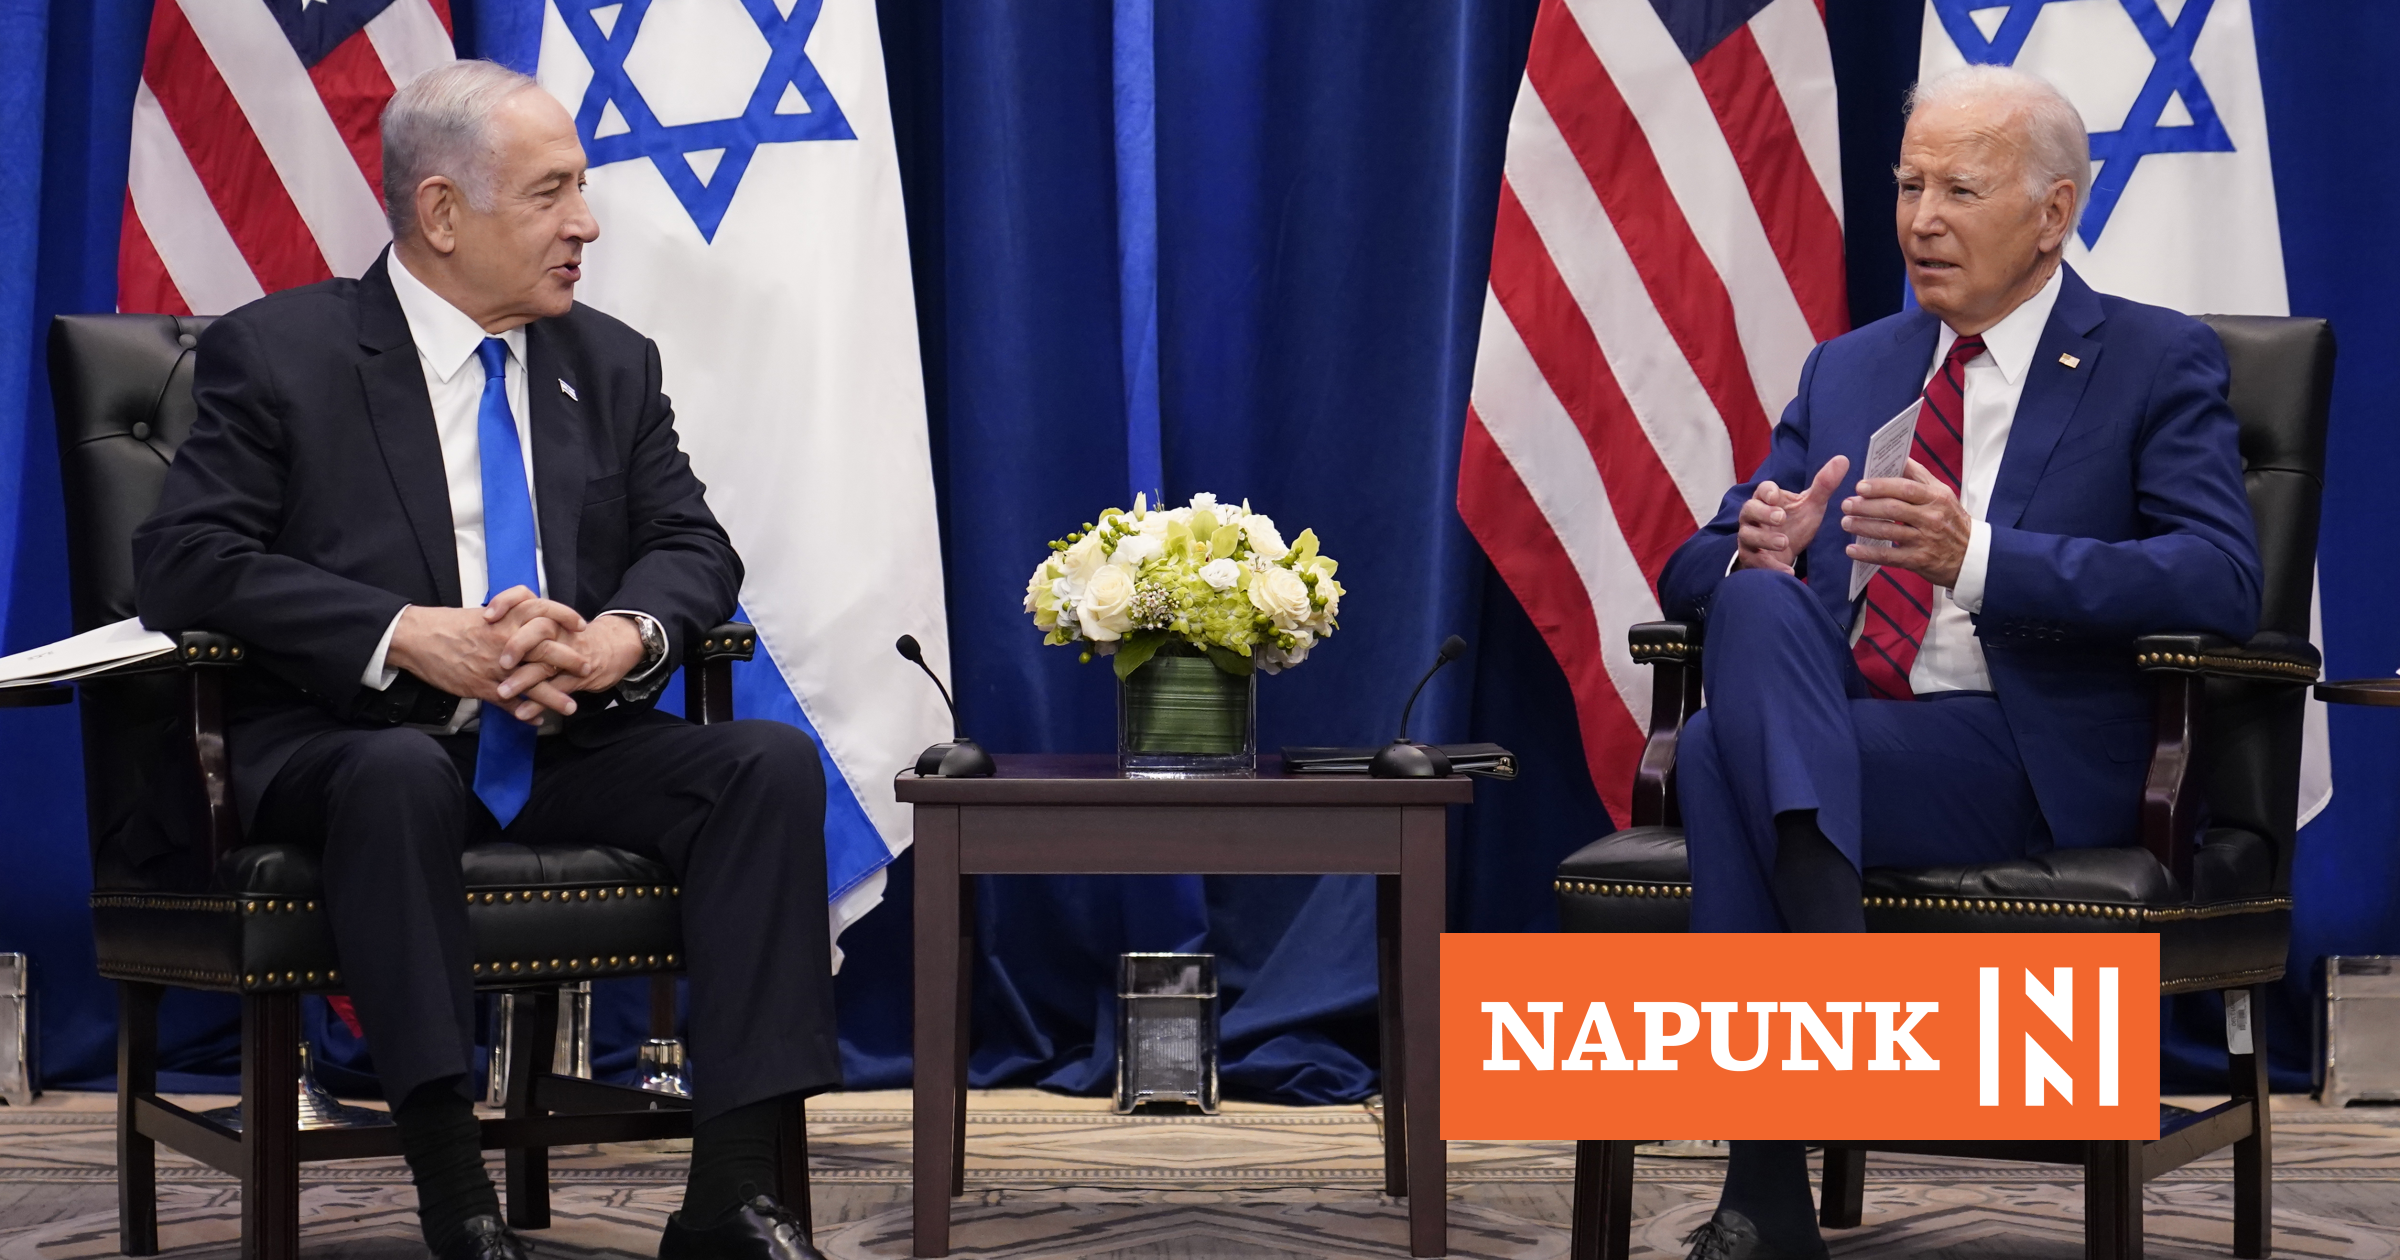 Geopolitikai körkép az Izrael és a Hamász közötti háborúról: Putyin örül, Európa zavartnak tűnik